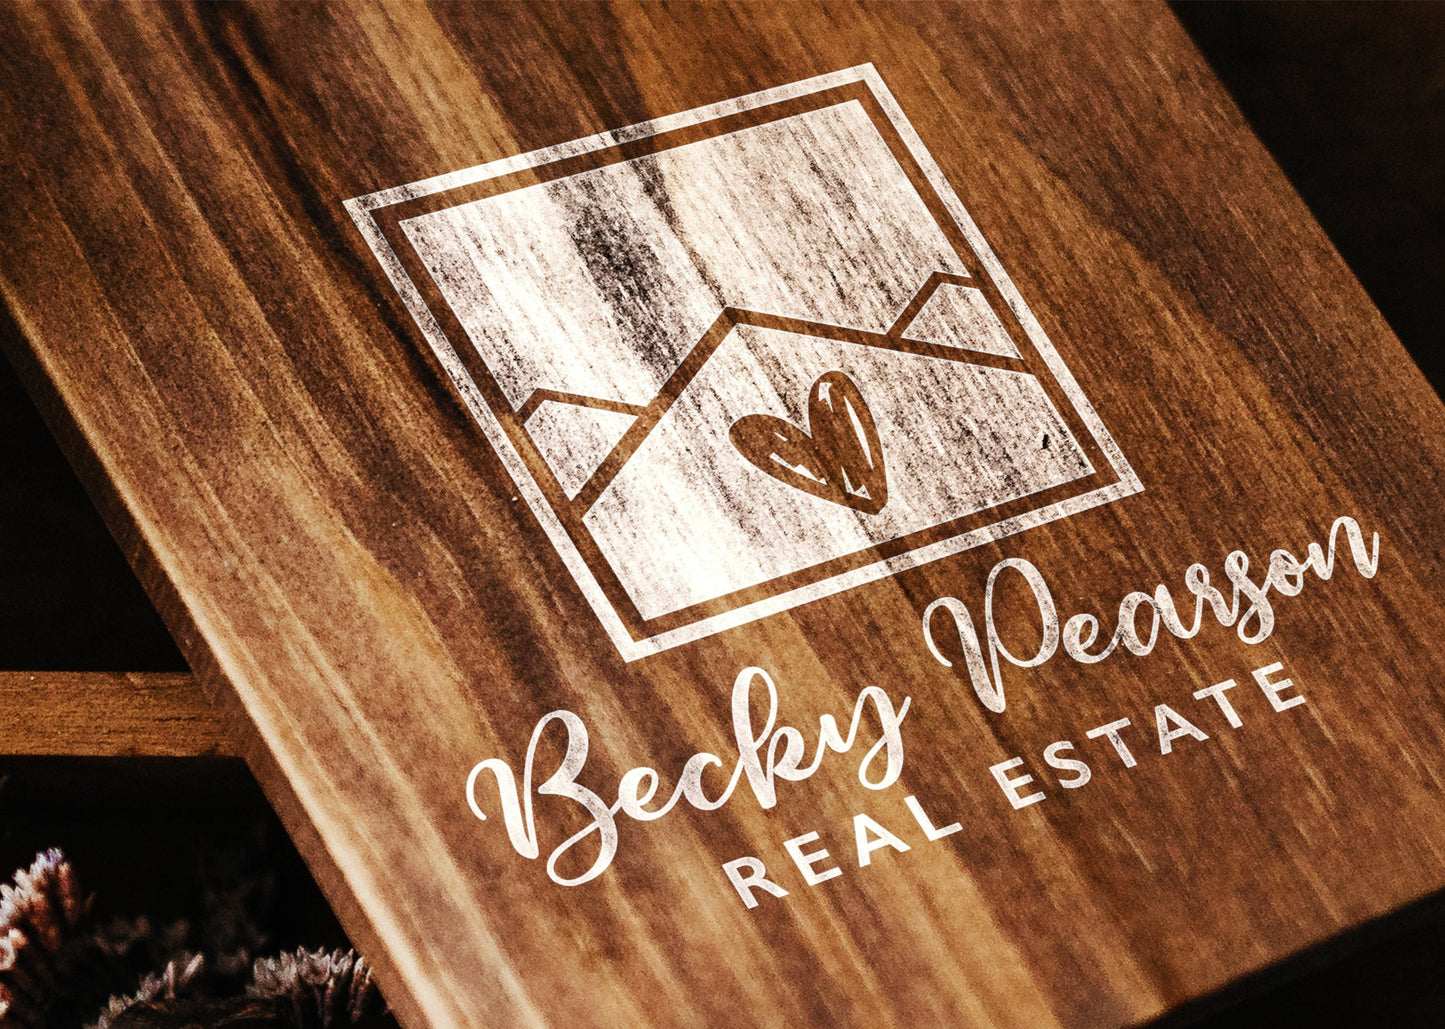 Real Estate Logo Design Realtor Logo Property Management Marketing